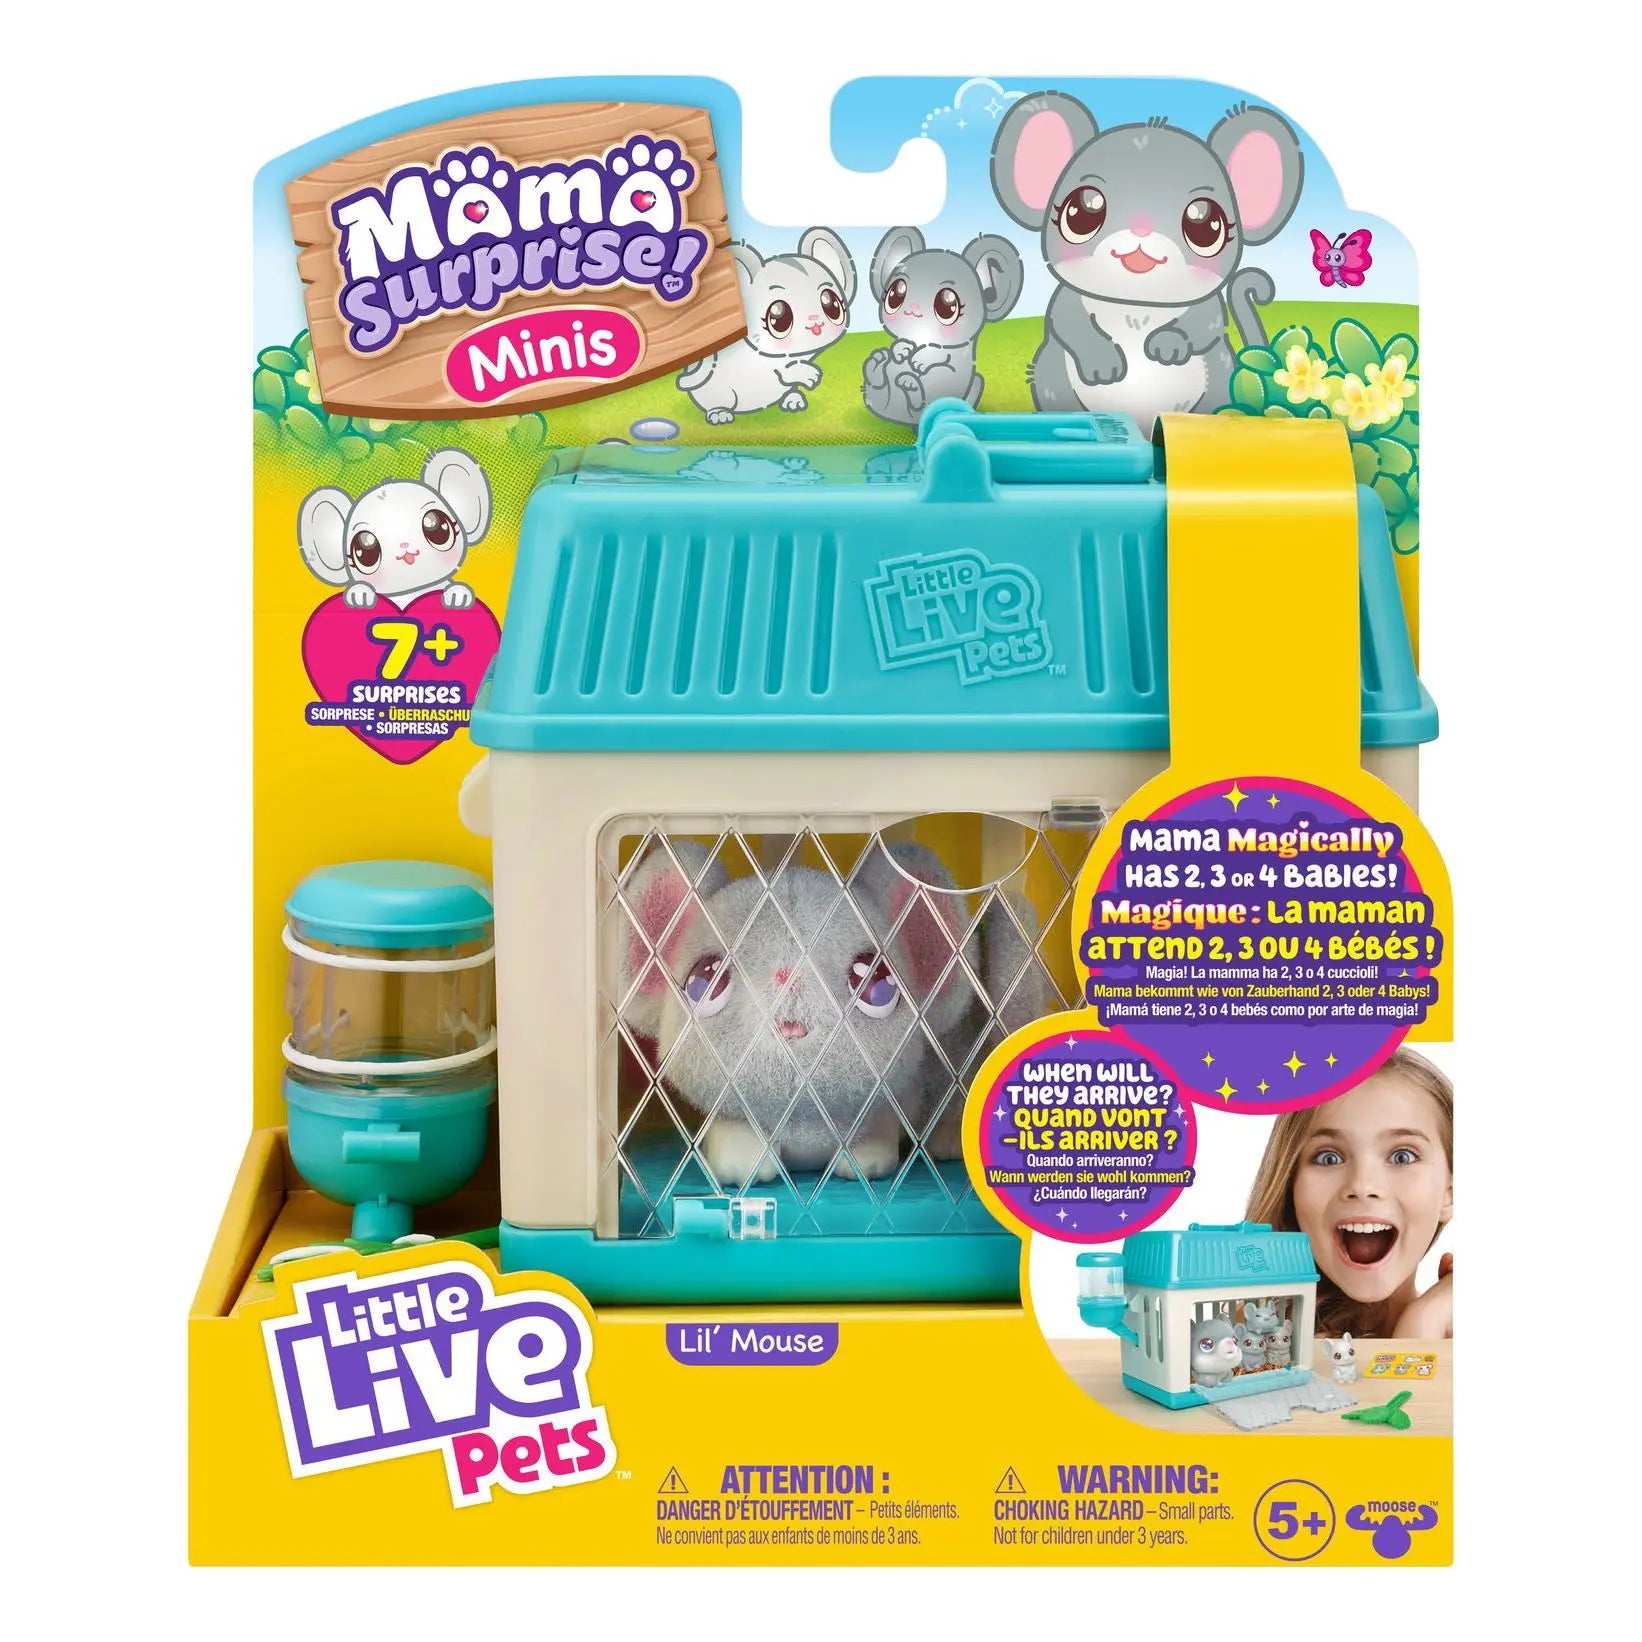 Little Live Pets Mama Surprise Minis Lil Mouse Playset Little Live Pets